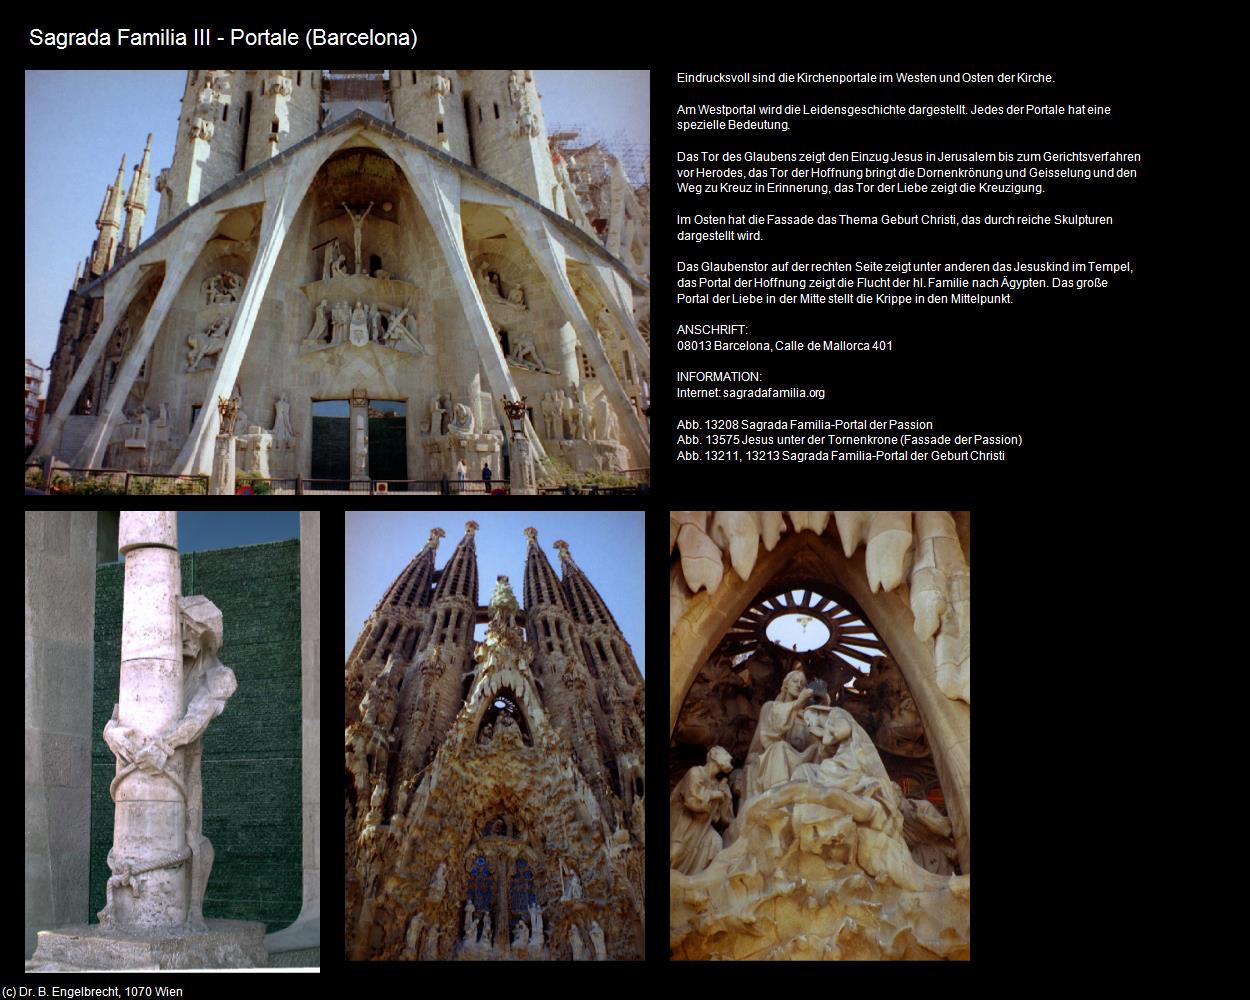 Sagrada Familia III (Barcelona) in KATALONIEN